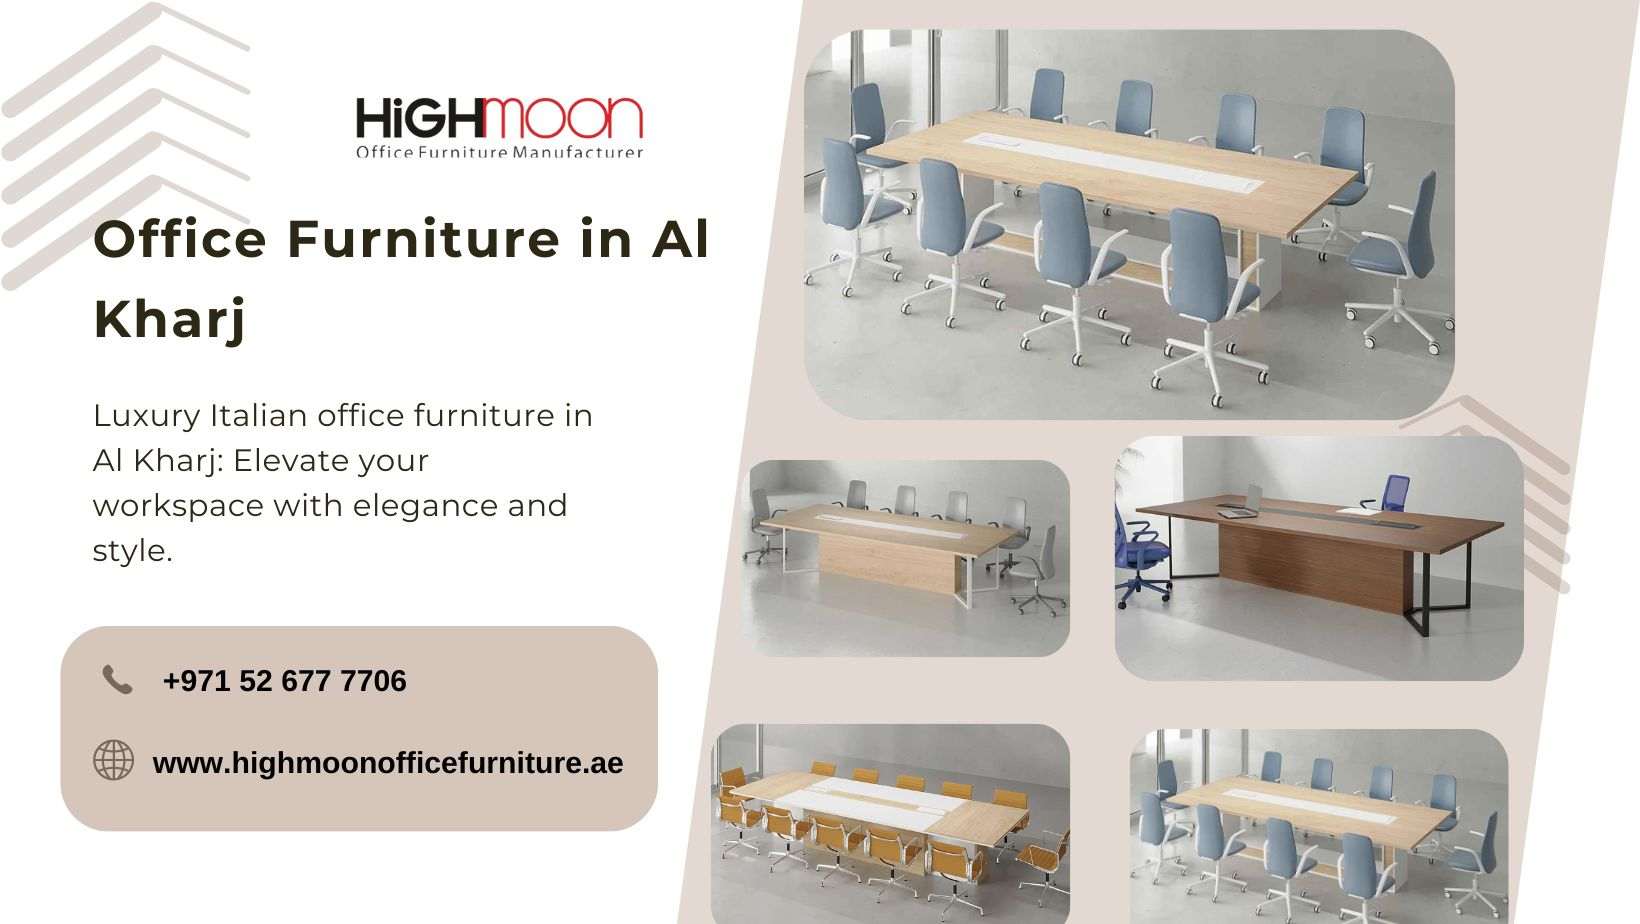 Italian Office Fuirniture in Al Kharj – Modern Luxury Office Furniture